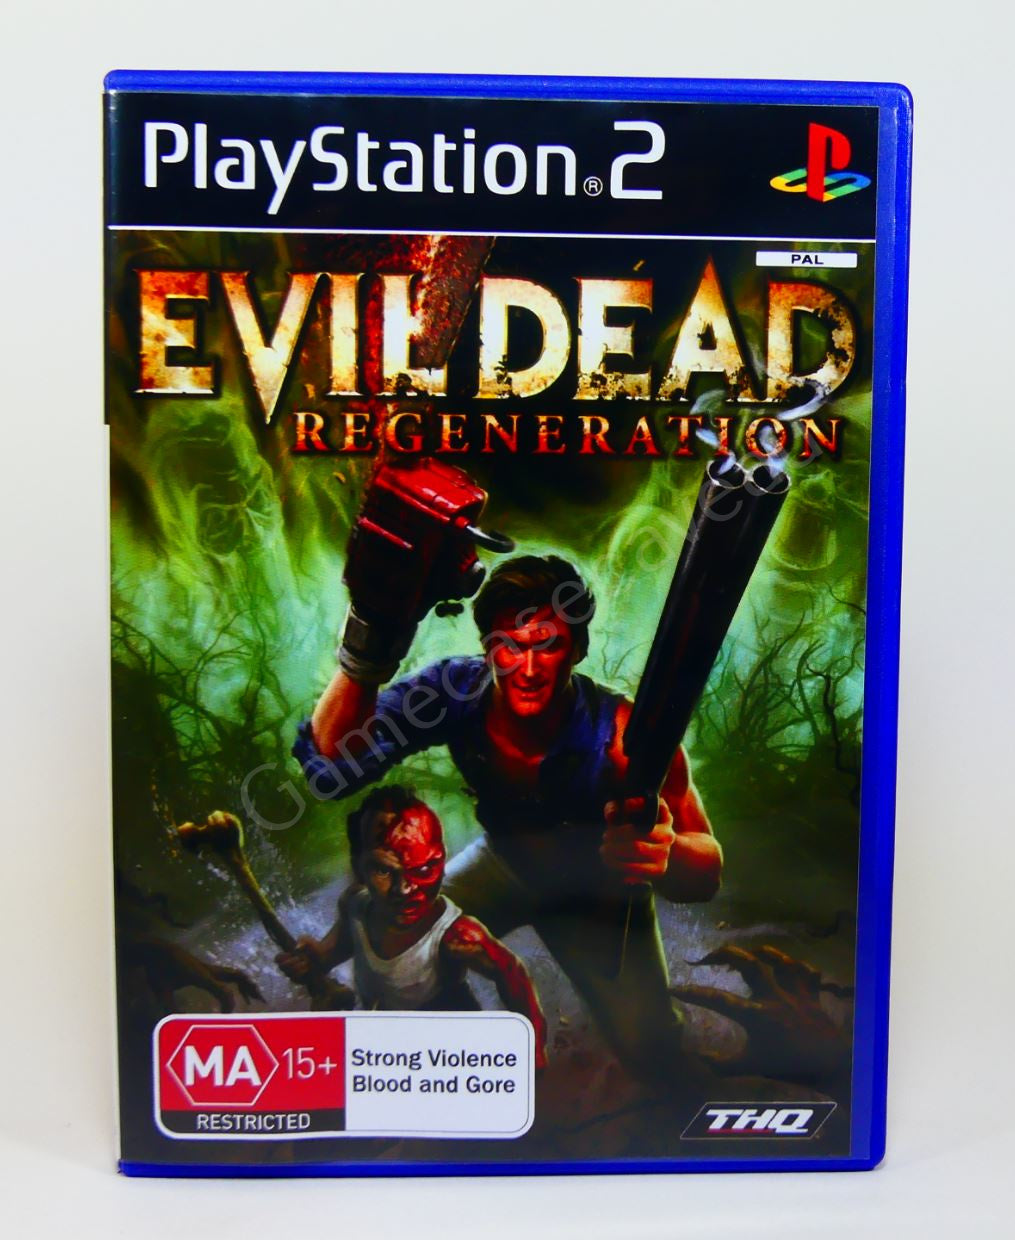 Evil Dead 3 Regeneration